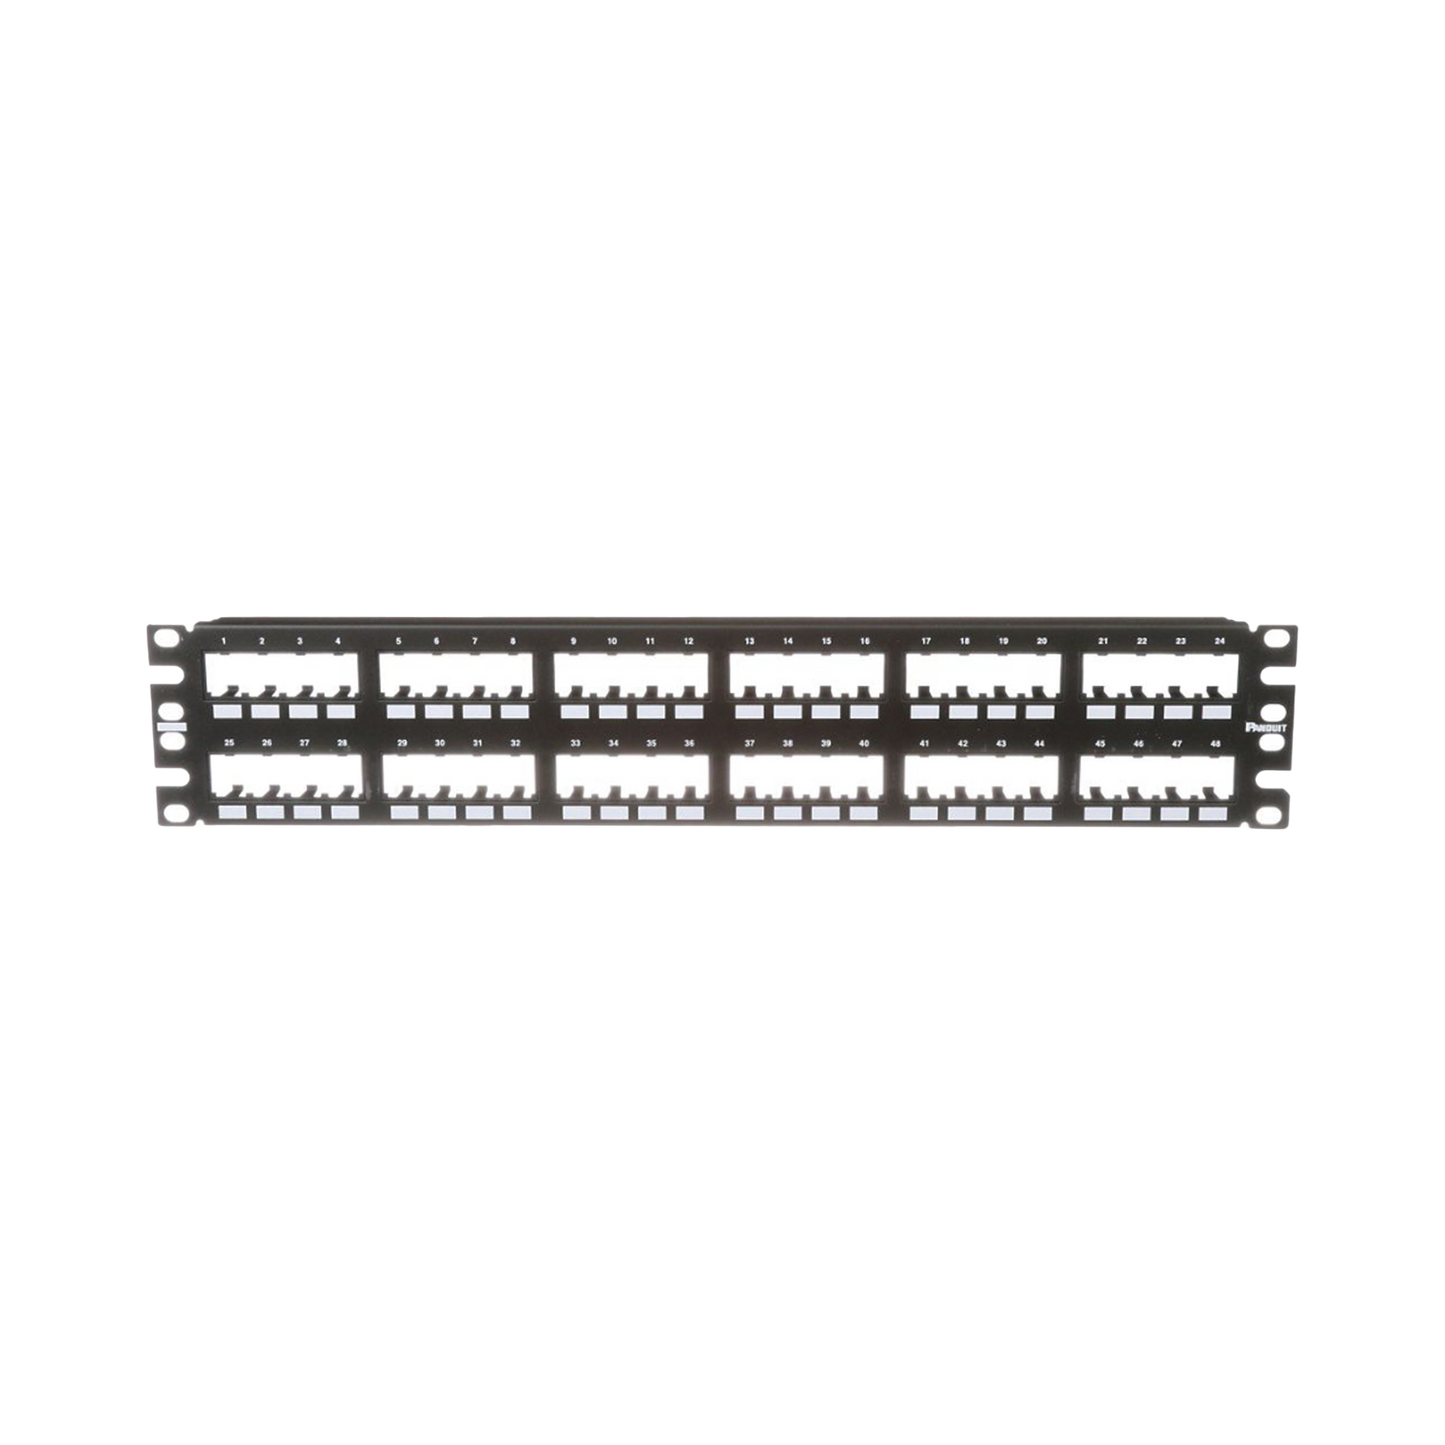 Panel de Parcheo Modular Mini-Com (Sin Conectores), Plano de Instalación al Ras, Sin Blindaje, de 48 puertos, 2UR